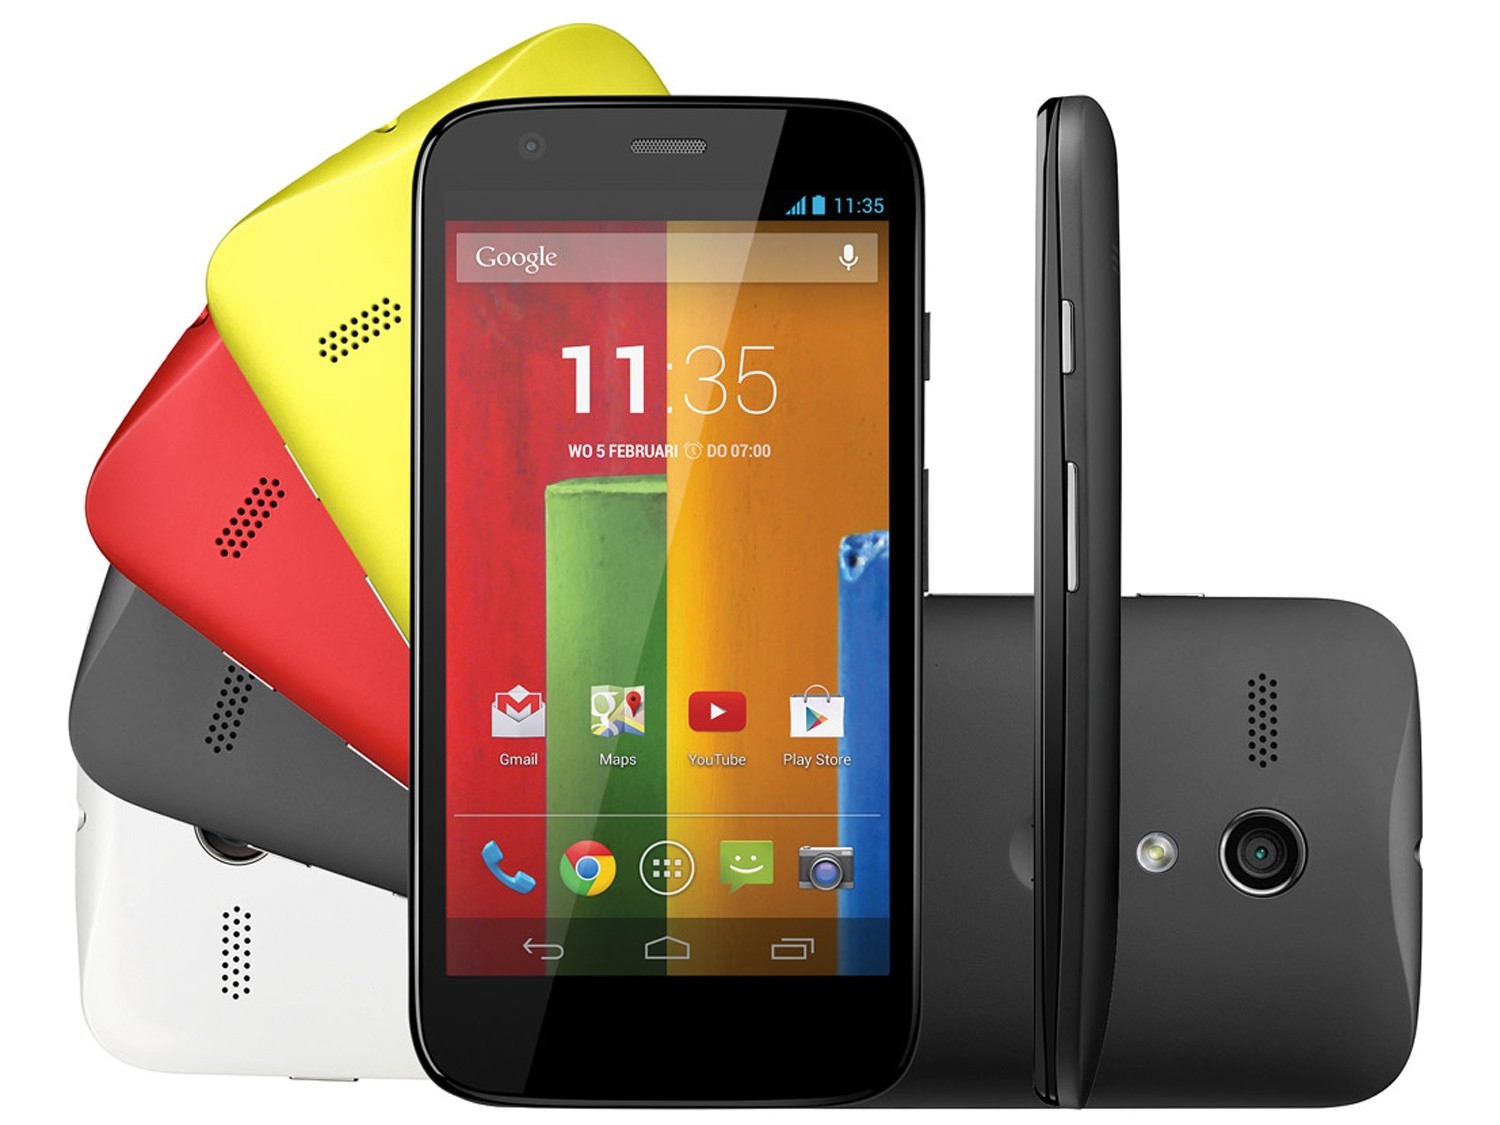 Smartphone giá rẻ nghe nhạc tốt Motorola Moto G có loa ngoài to nhất